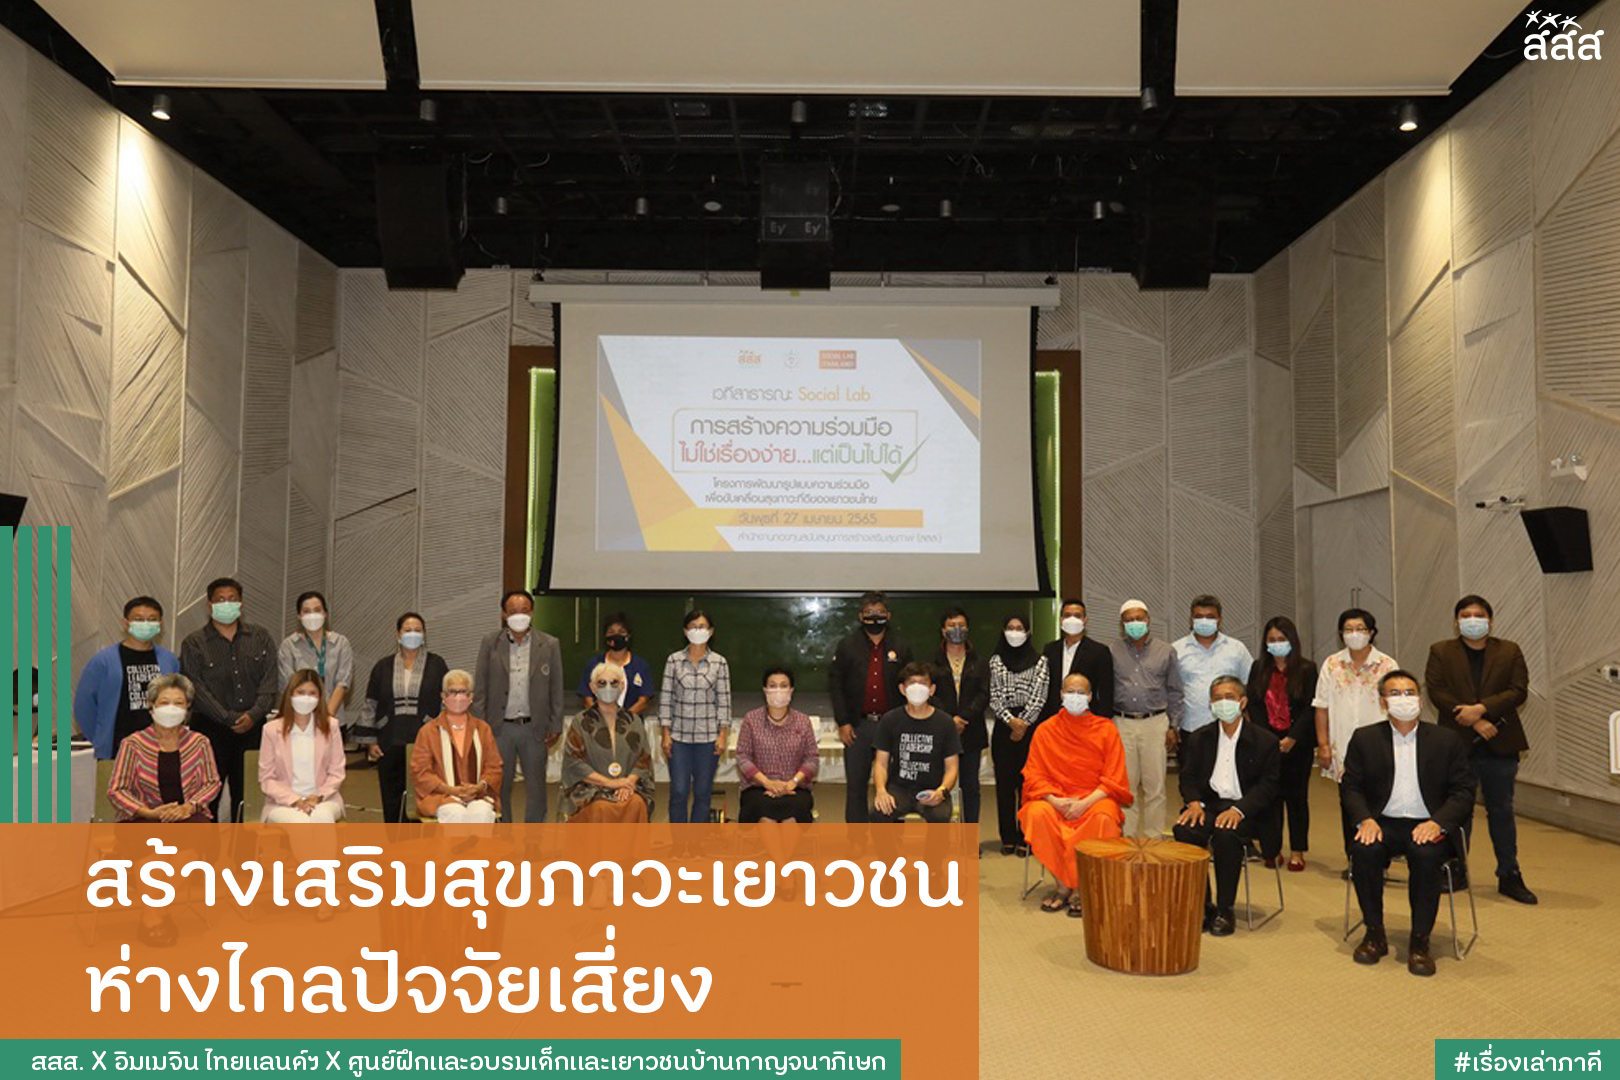 สร้างเสริมสุขภาวะเยาวชน ห่างไกลปัจจัยเสี่ยง thaihealth